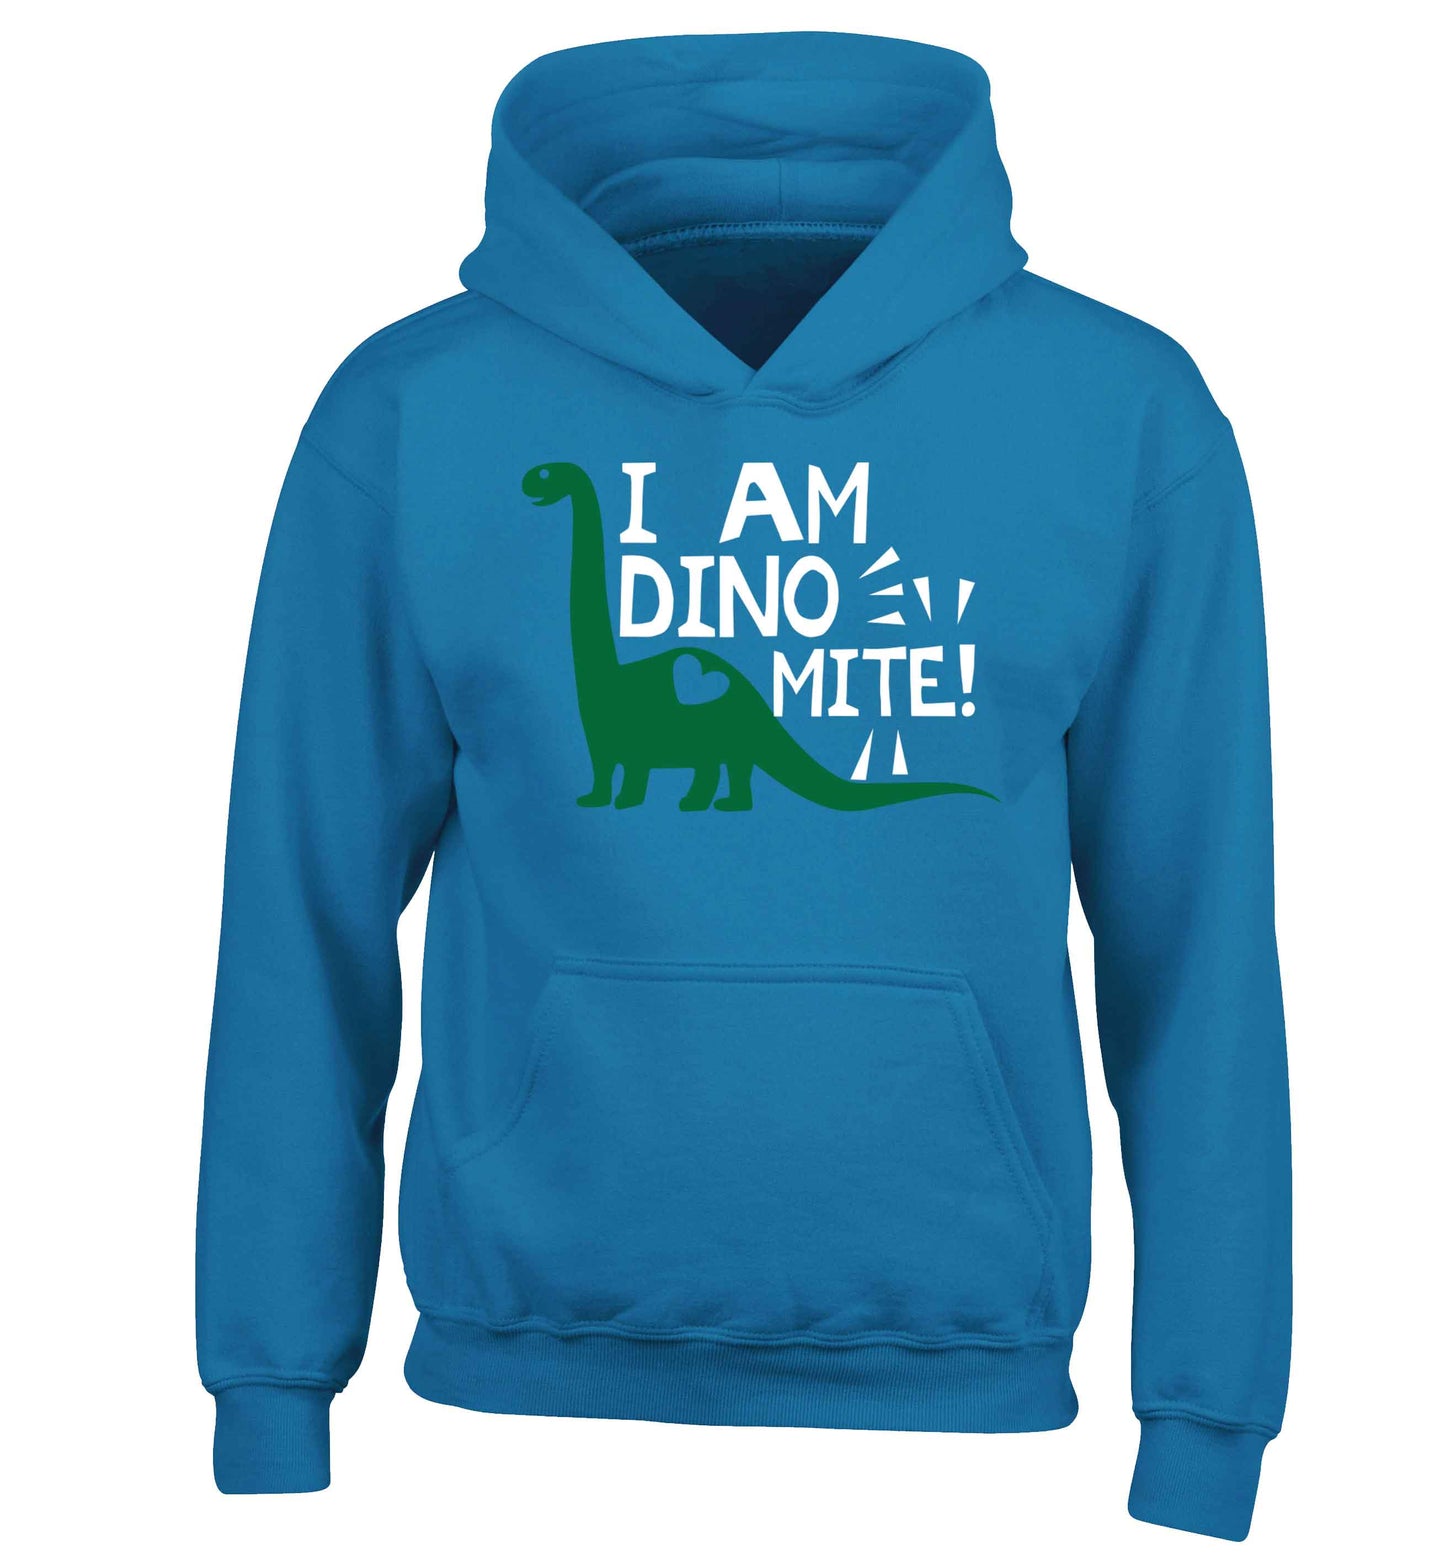 I am dinomite! children's blue hoodie 12-13 Years